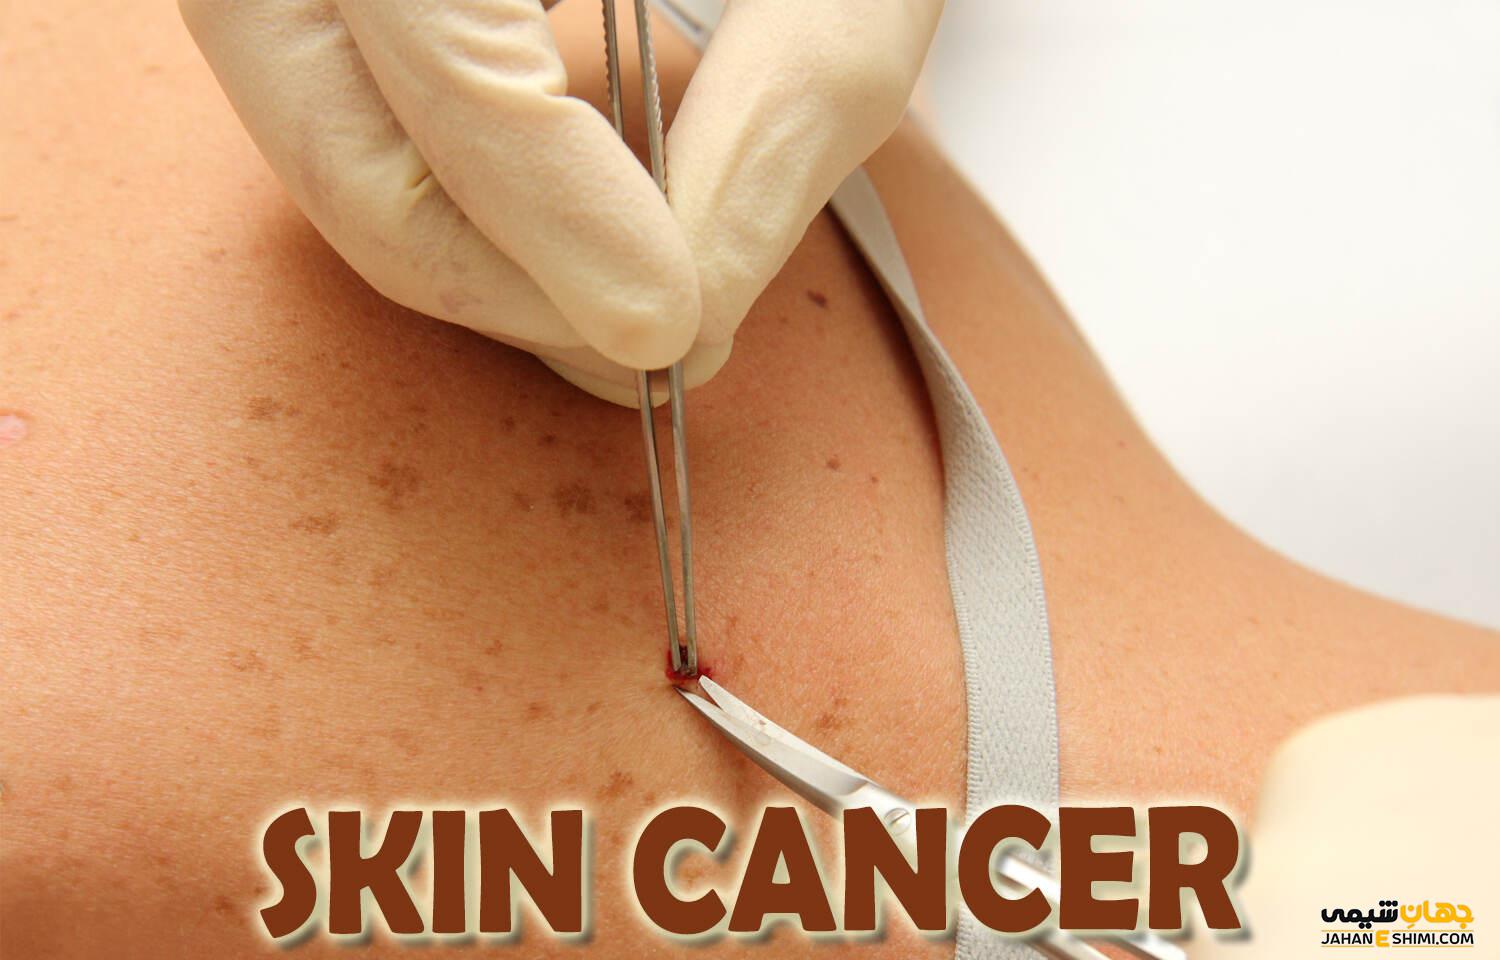 سرطان پوست و نشانه های خطرناک آن را بشناسید!